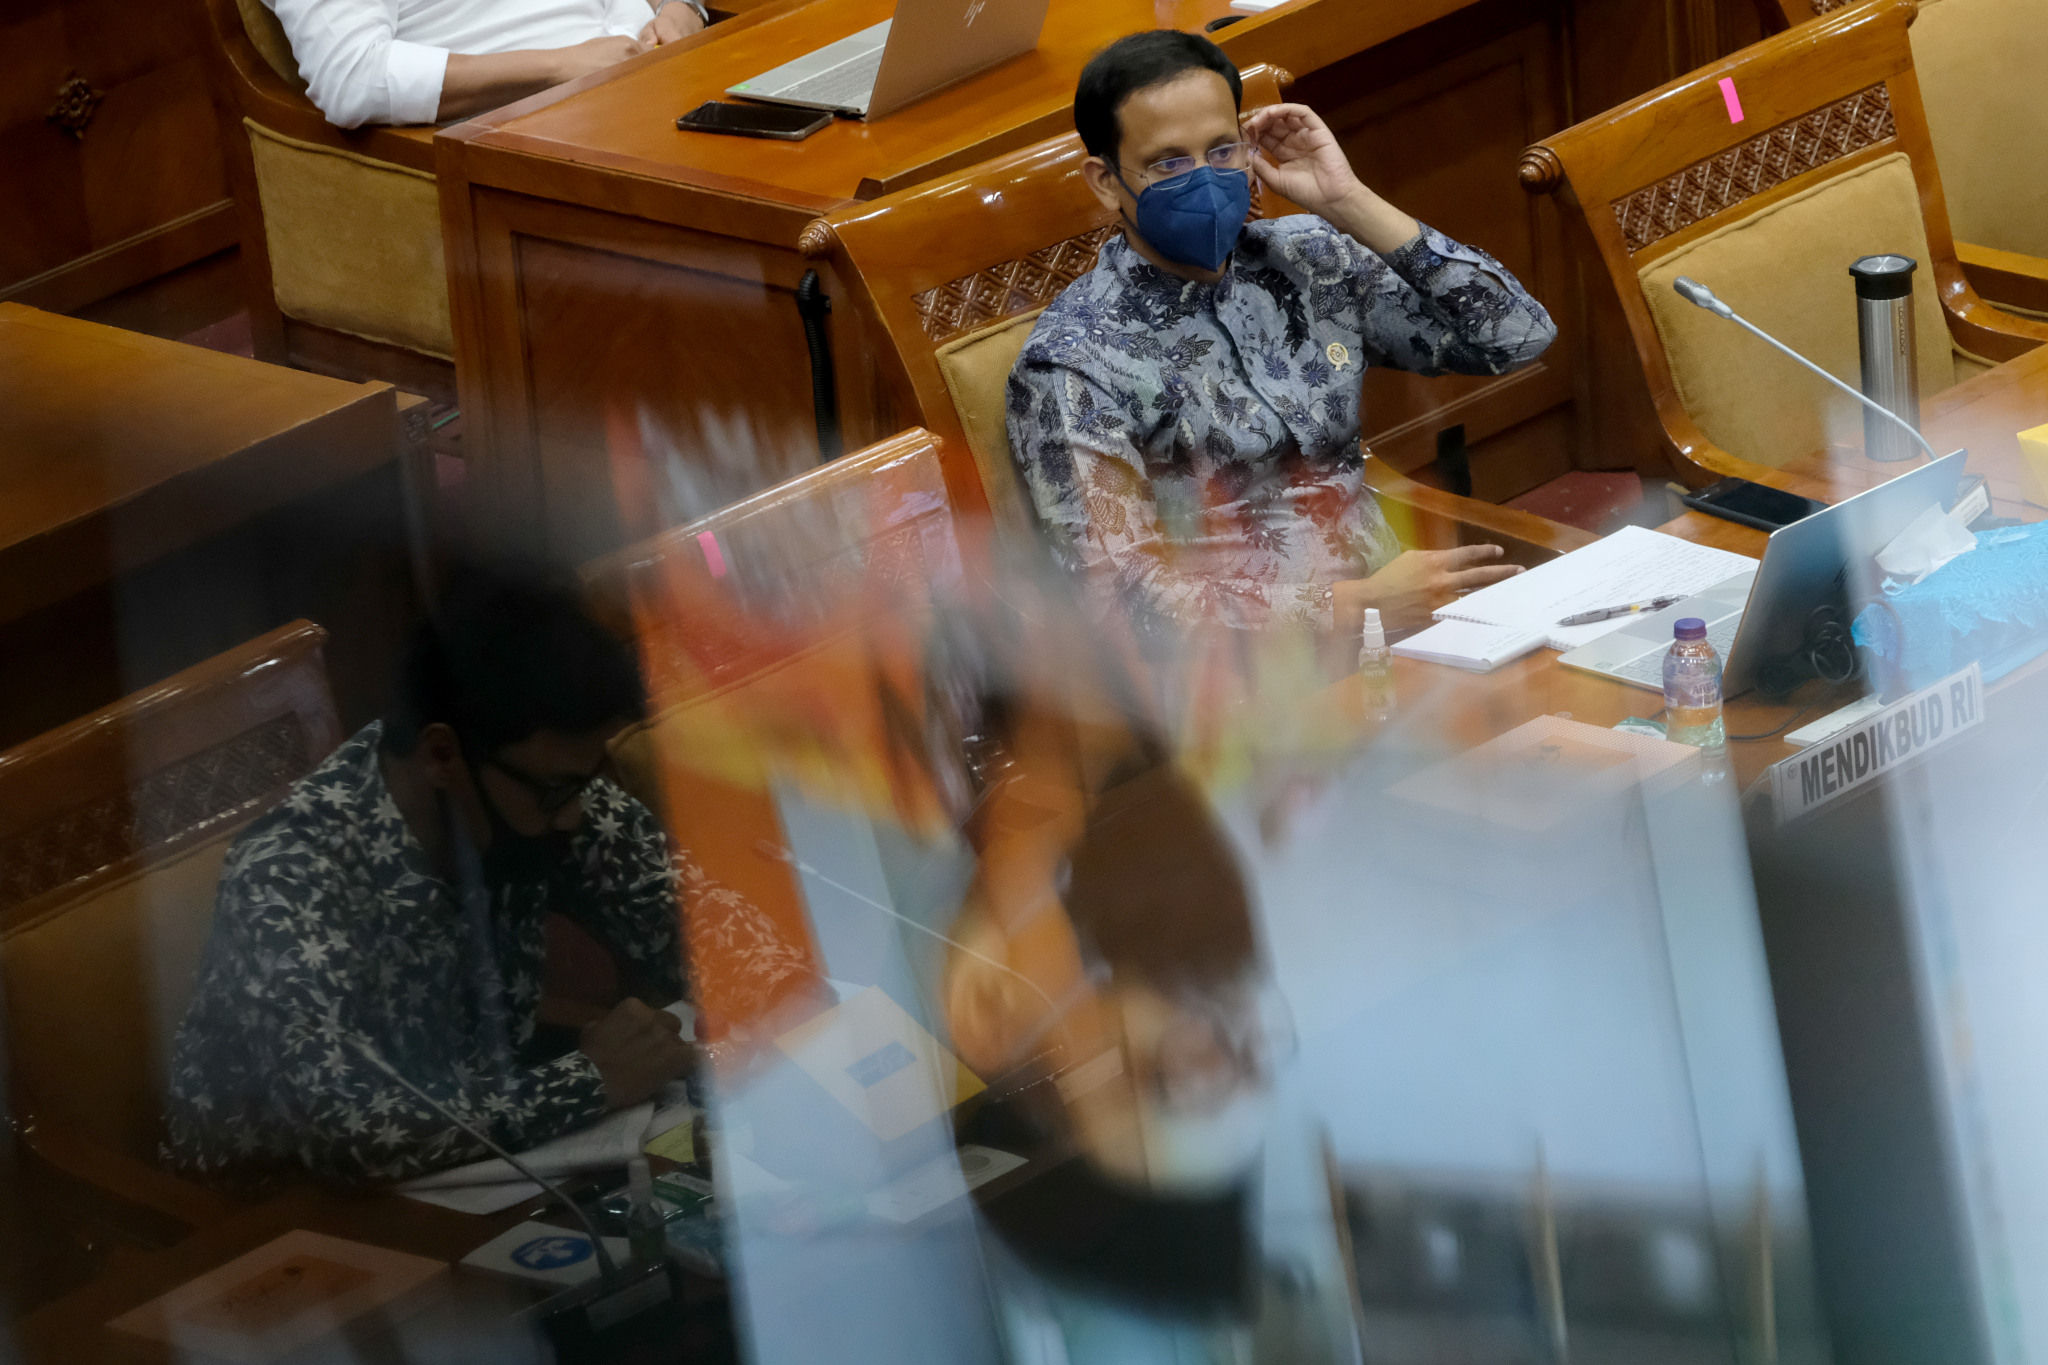 <p>Menteri Pendidikan dan Kebudayaan, Nadiem Makarim saat mengikuti rapat kerja dengan Komisi X DPR di Komplek Parlemen Senayan, Jakarta, Senin, 16 November 2020. Foto: Ismail Pohan/TrenAsia</p>
